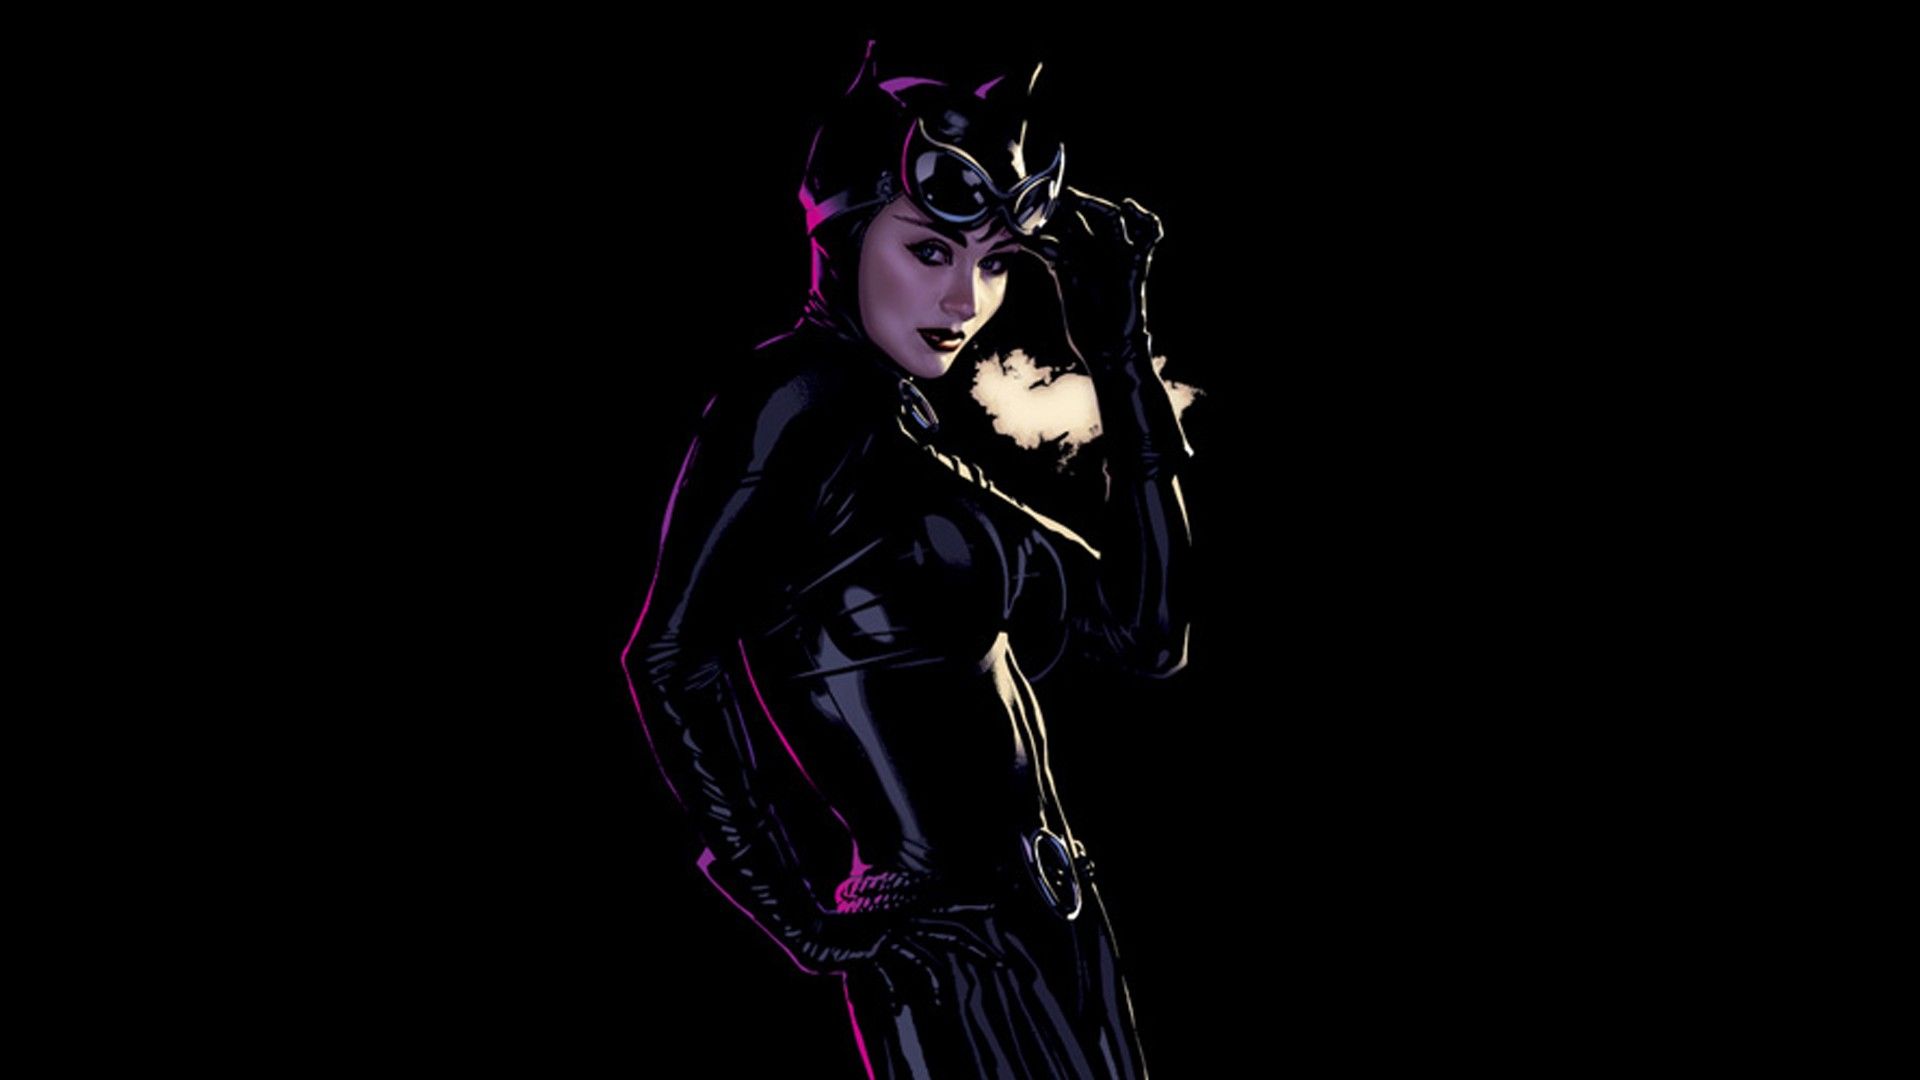 #black background, #illustration, #Adam Hughes, #Catwoman, #DC Comics, wallpaper. Mocah.org HD Wallpaper